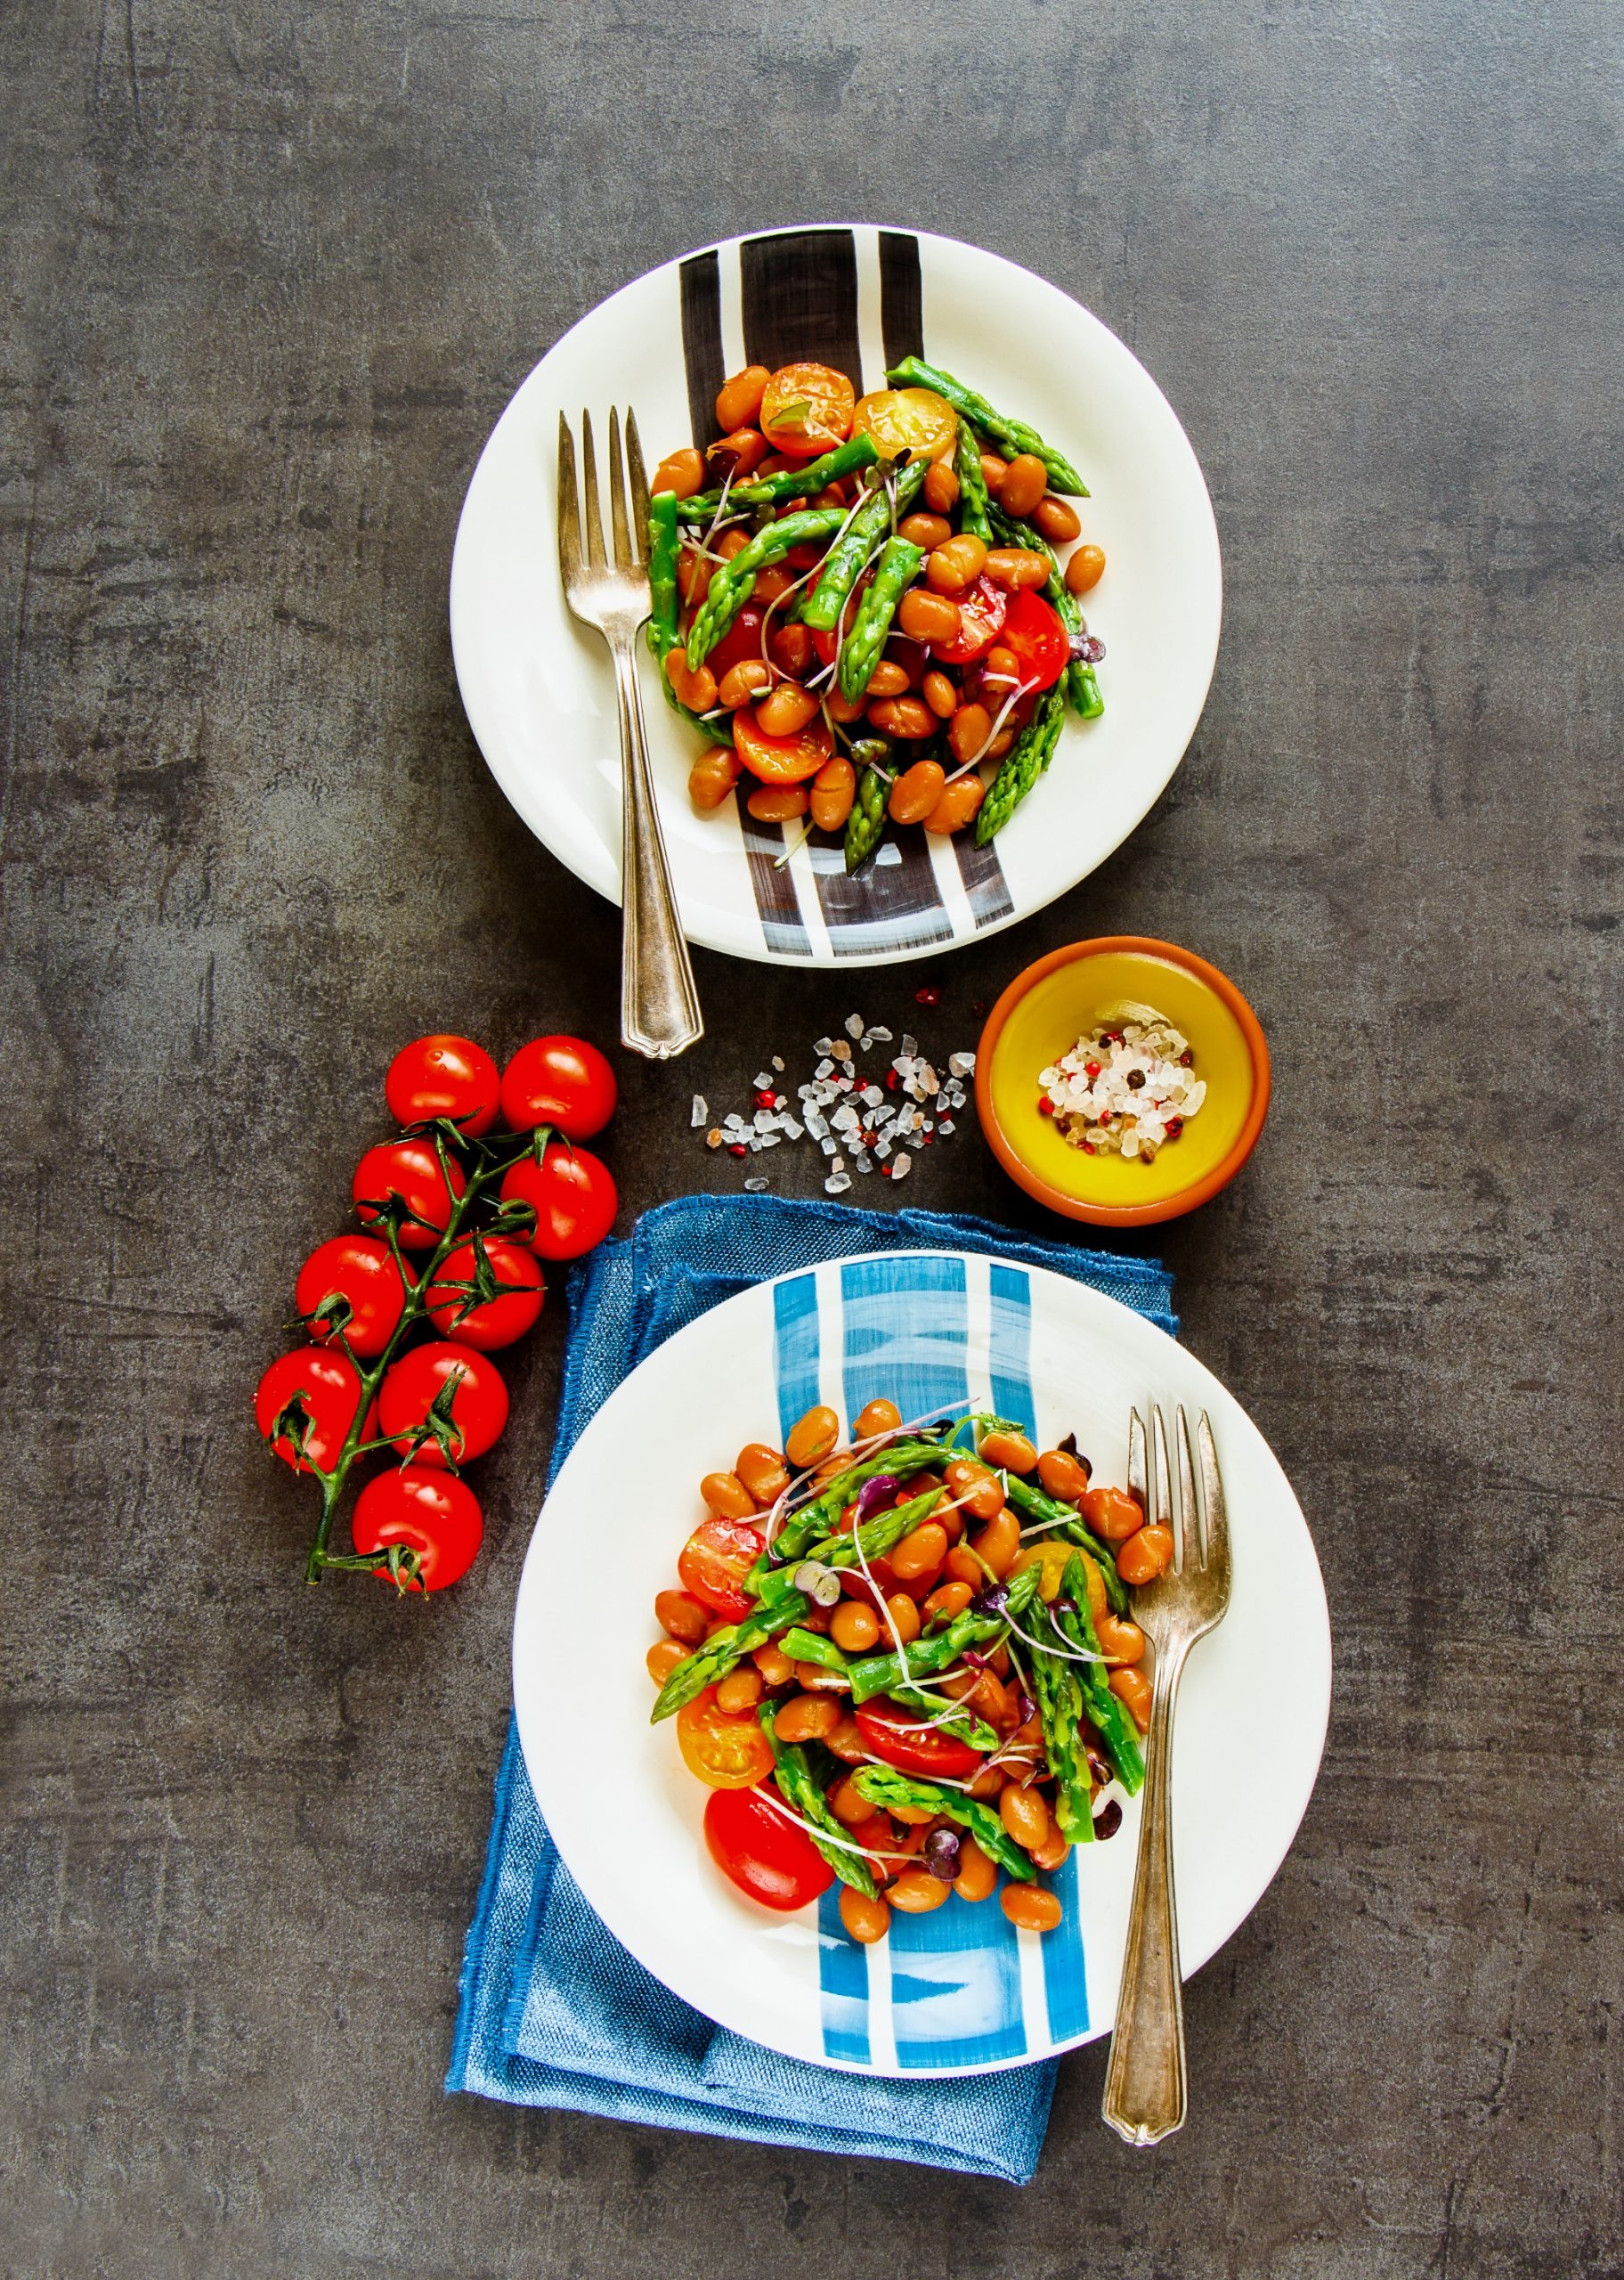 6 Healthy Salad Recipes